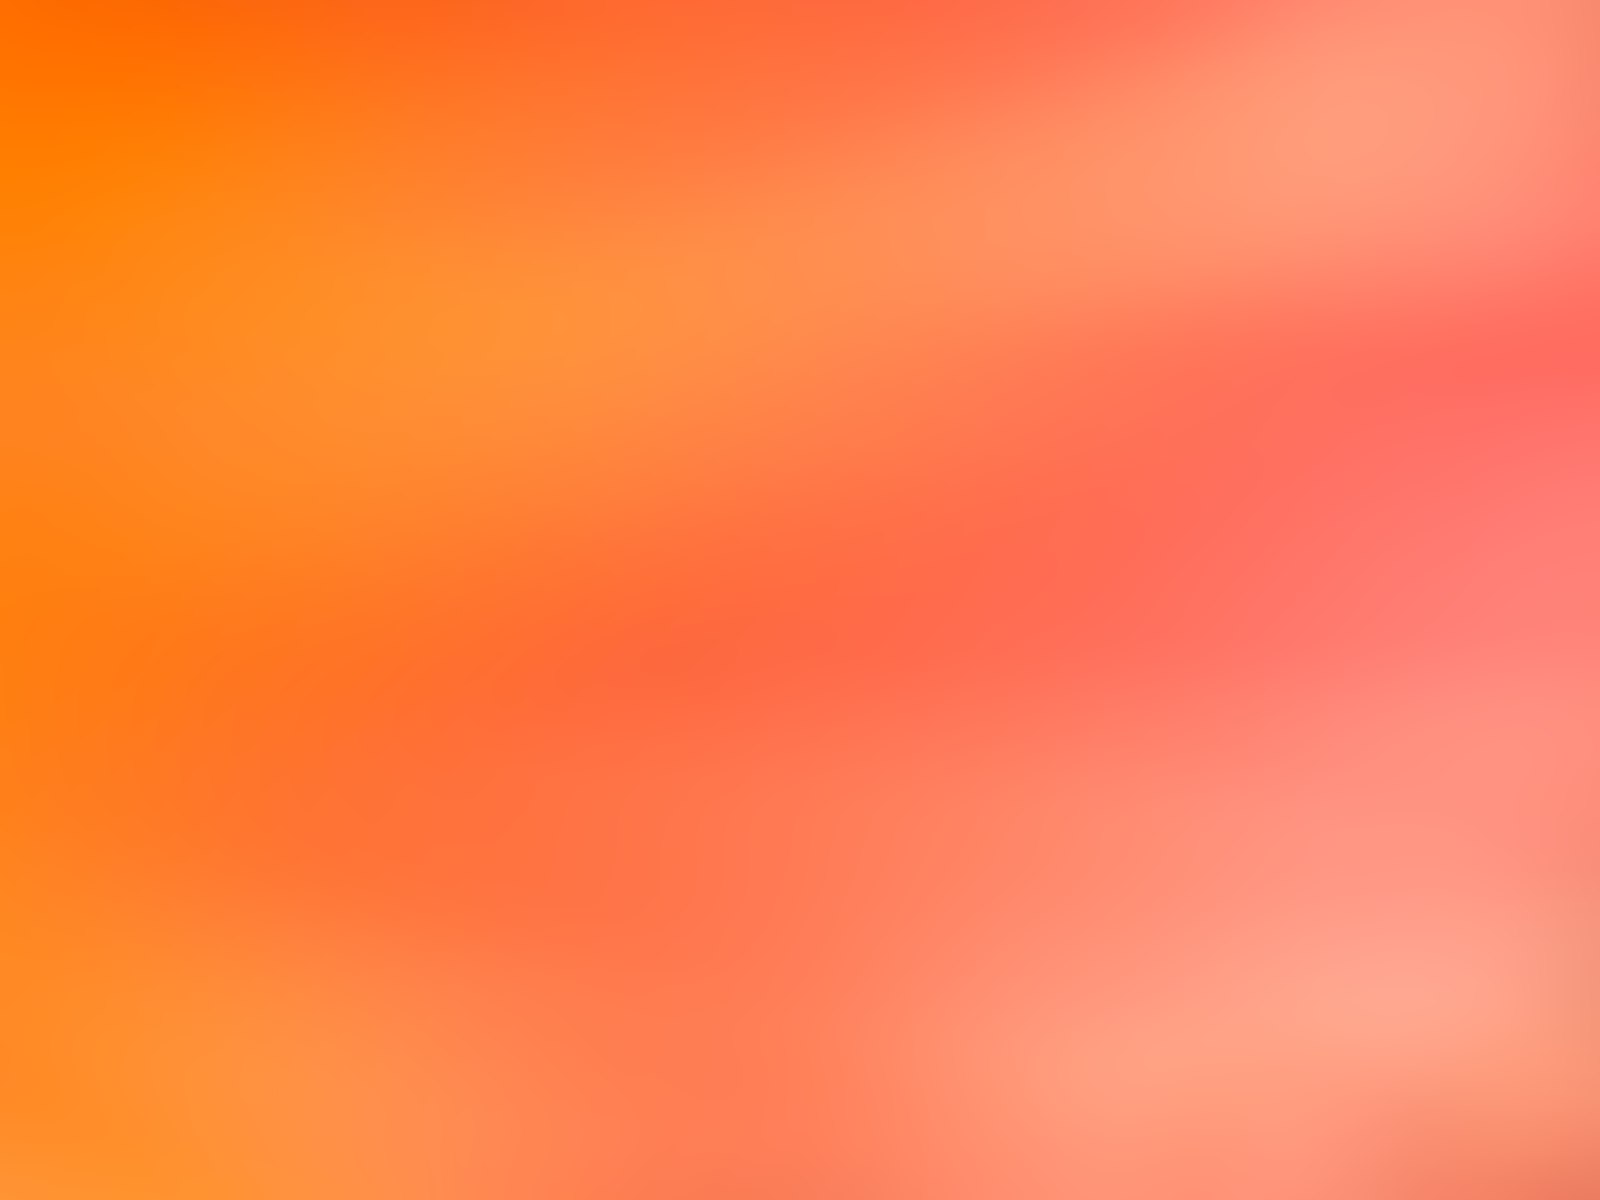 lightfx lighteffects orange blur blurred soft gradient